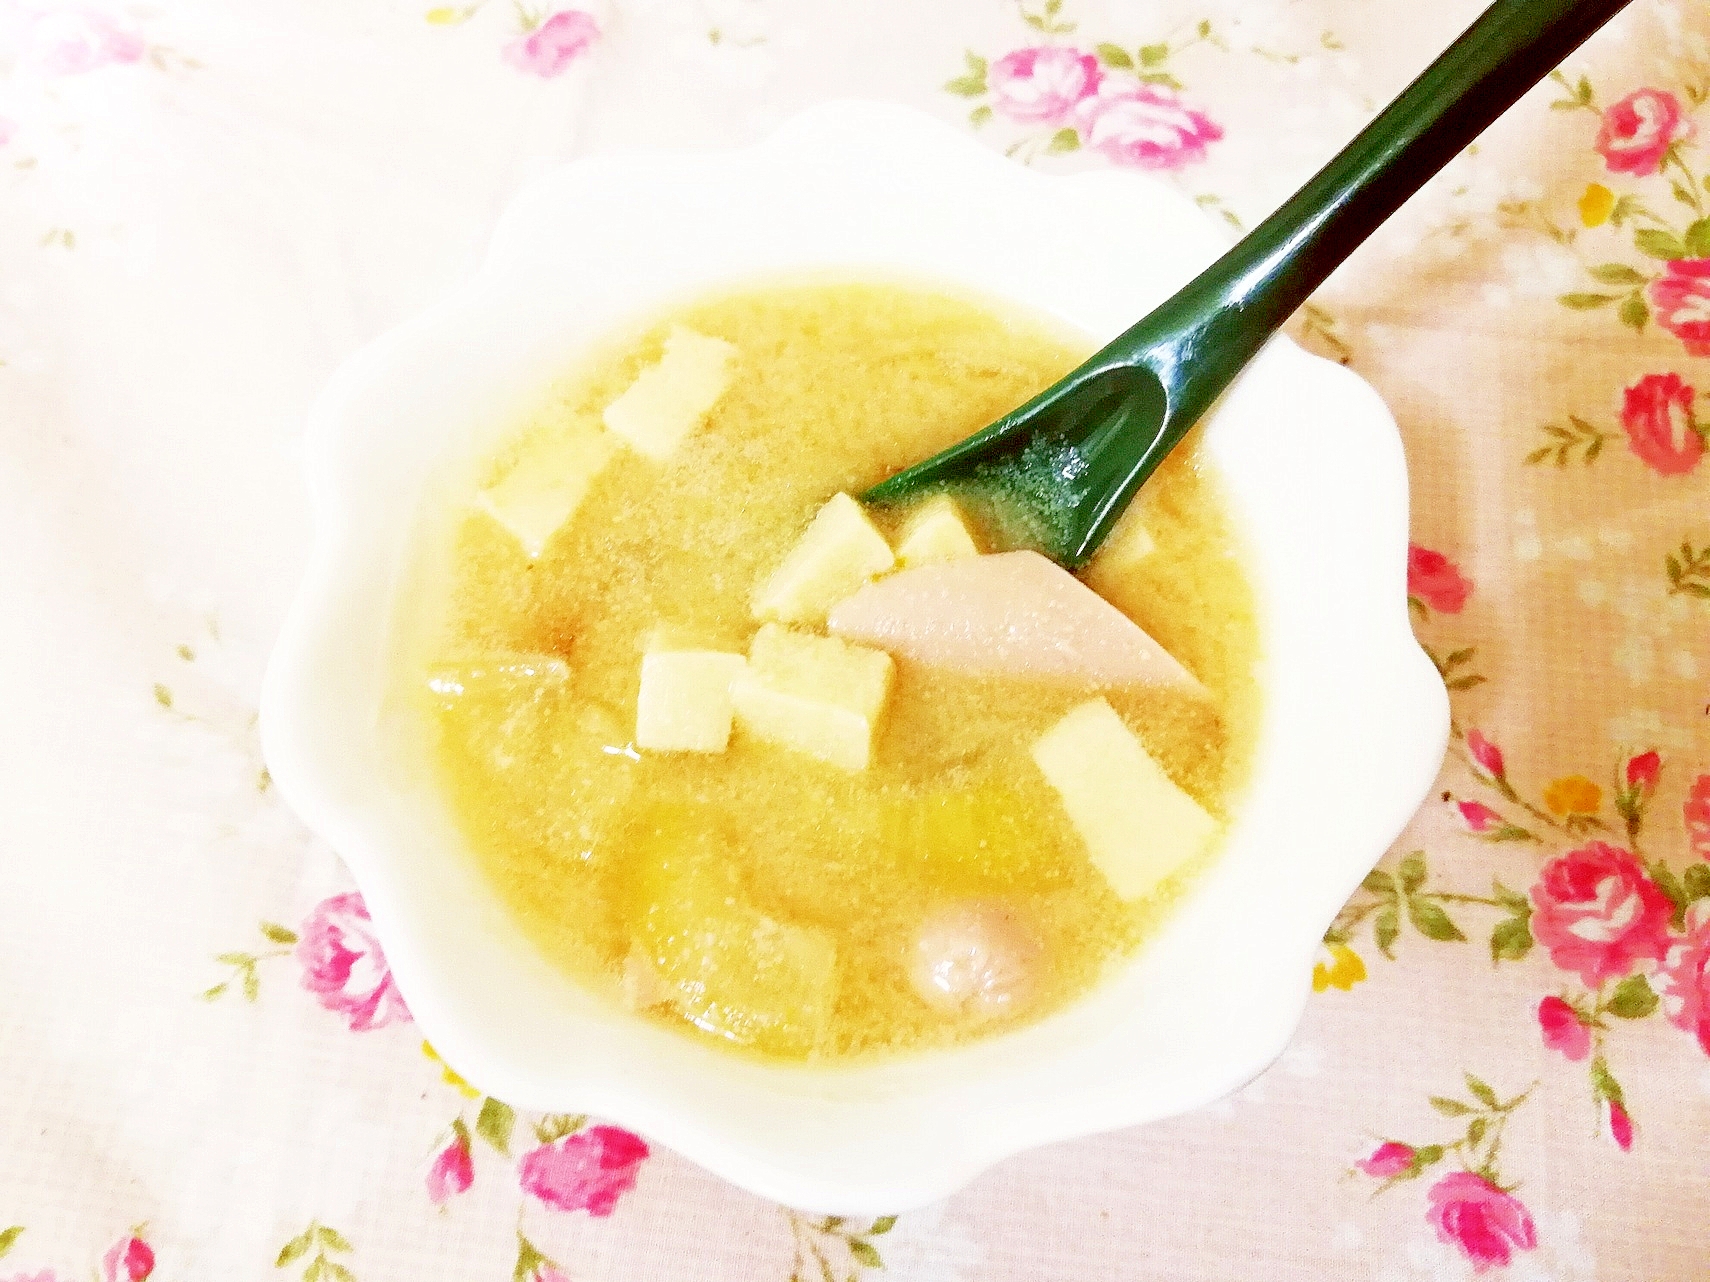 柚子胡椒風味♪玉葱とソーセージの味噌スープ